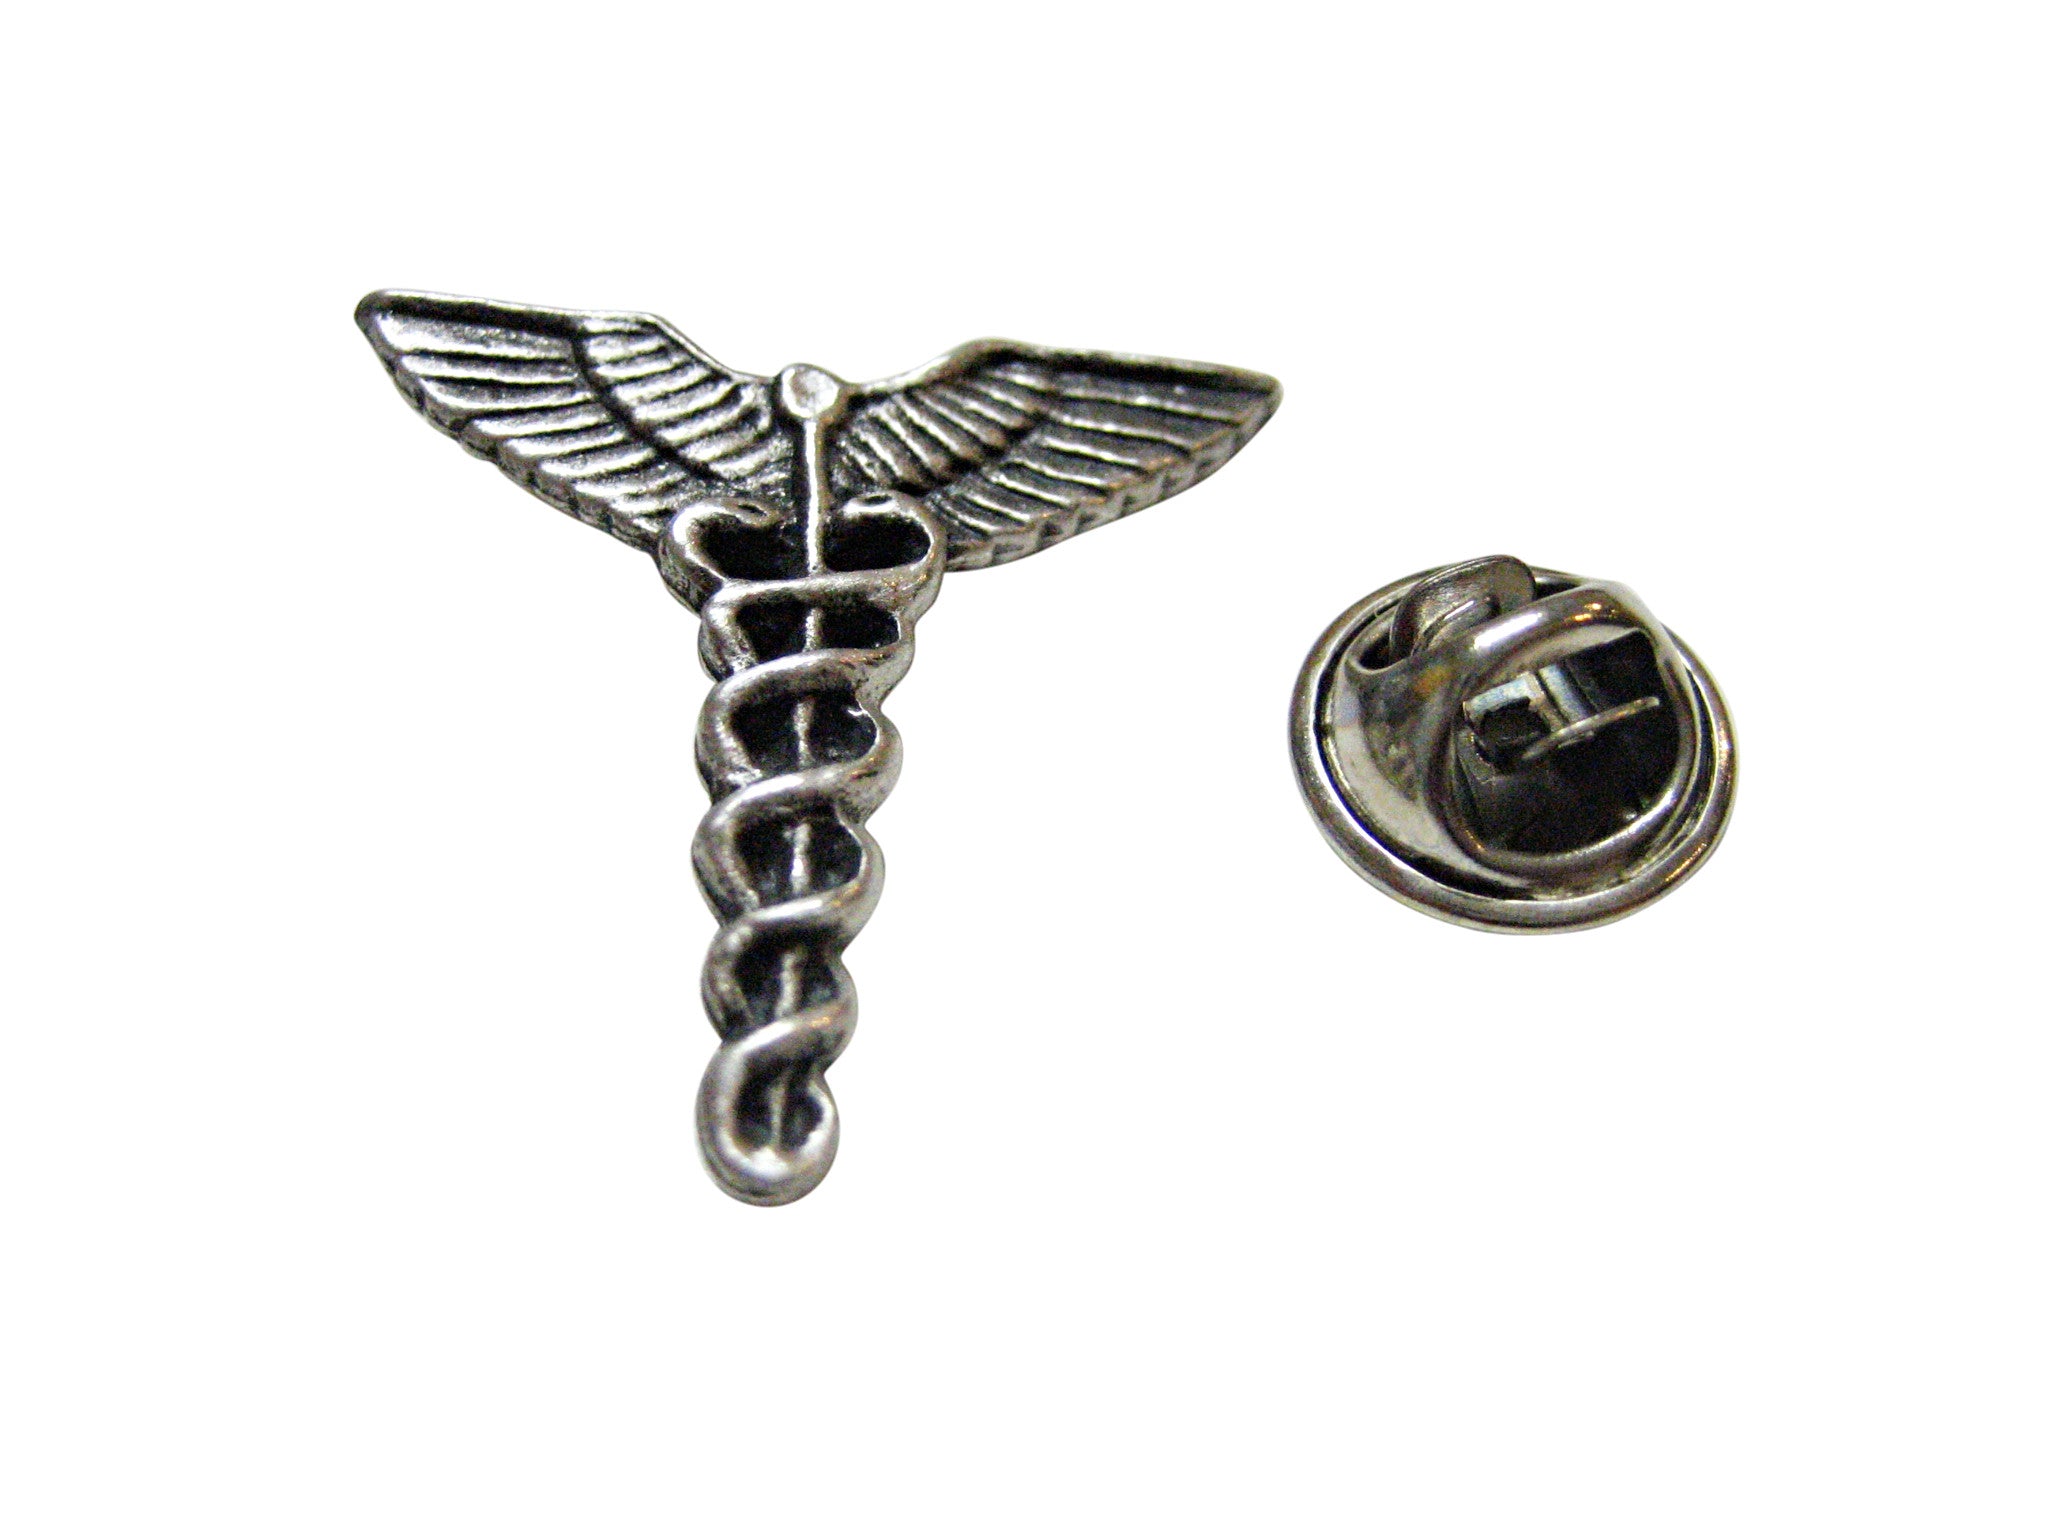 Textured Medical Symbol Caduceus Lapel Pin